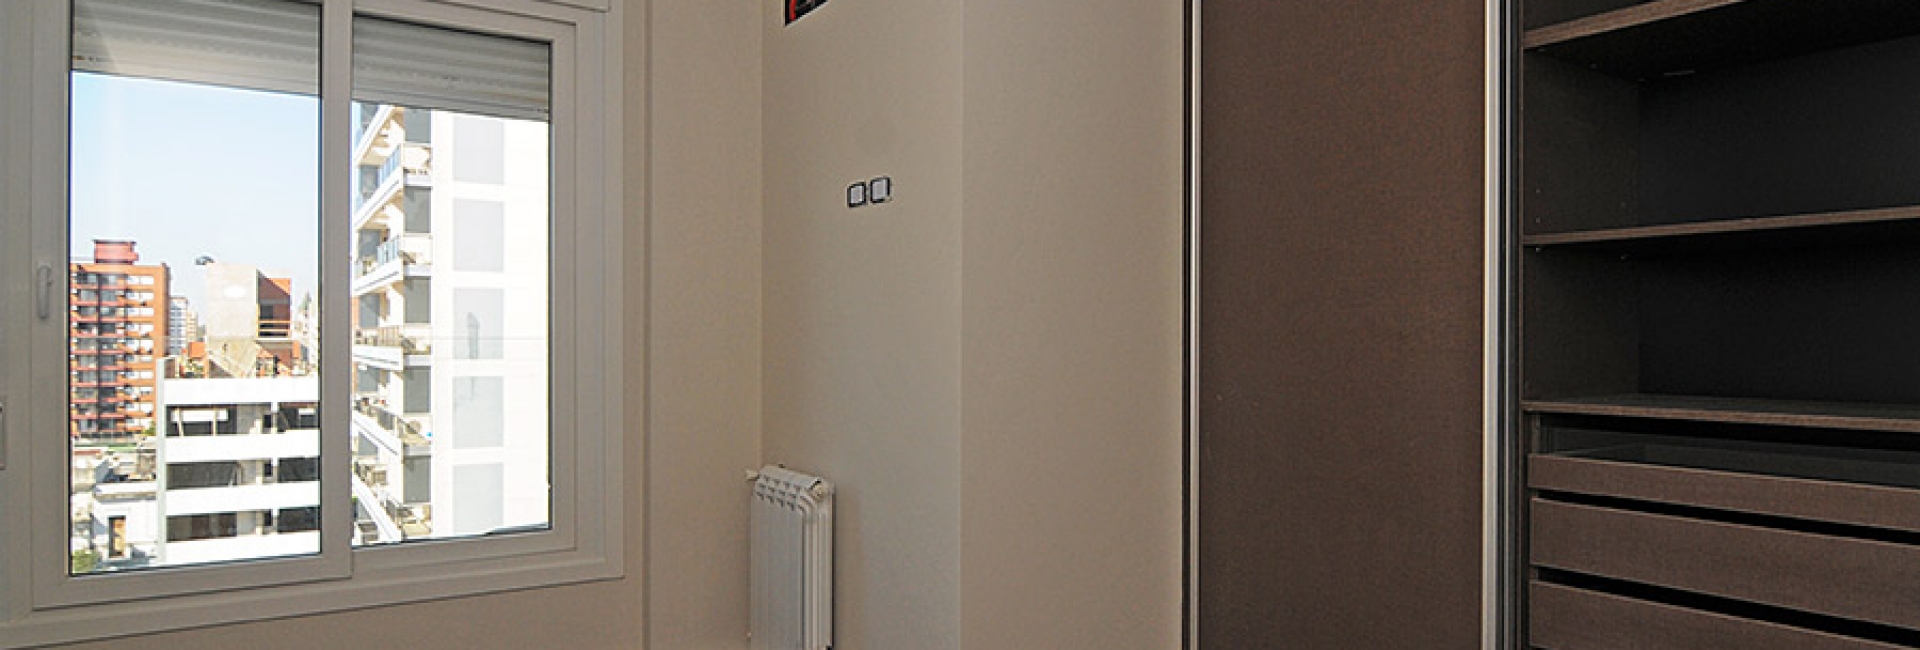 Los dormitorios tienen los placares colocados y los radiadores instalados